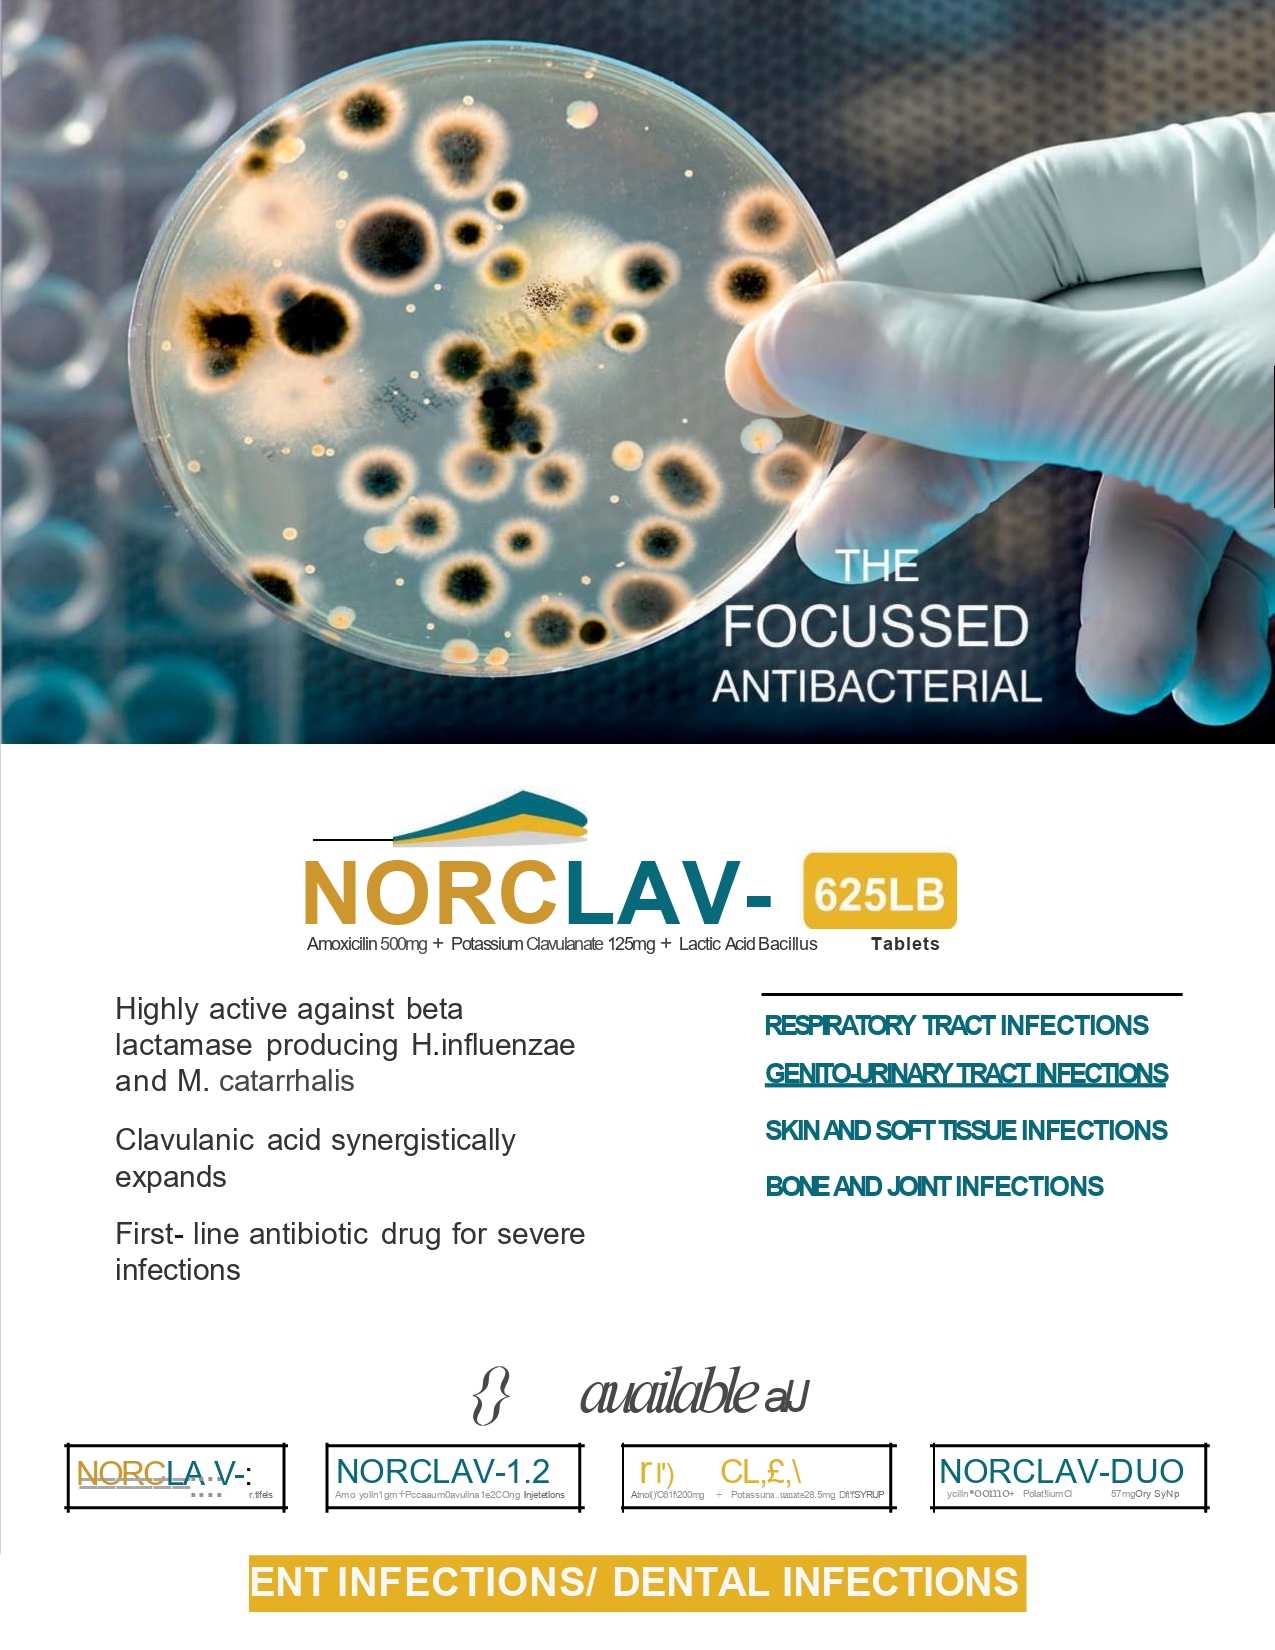 Norclav-1.2